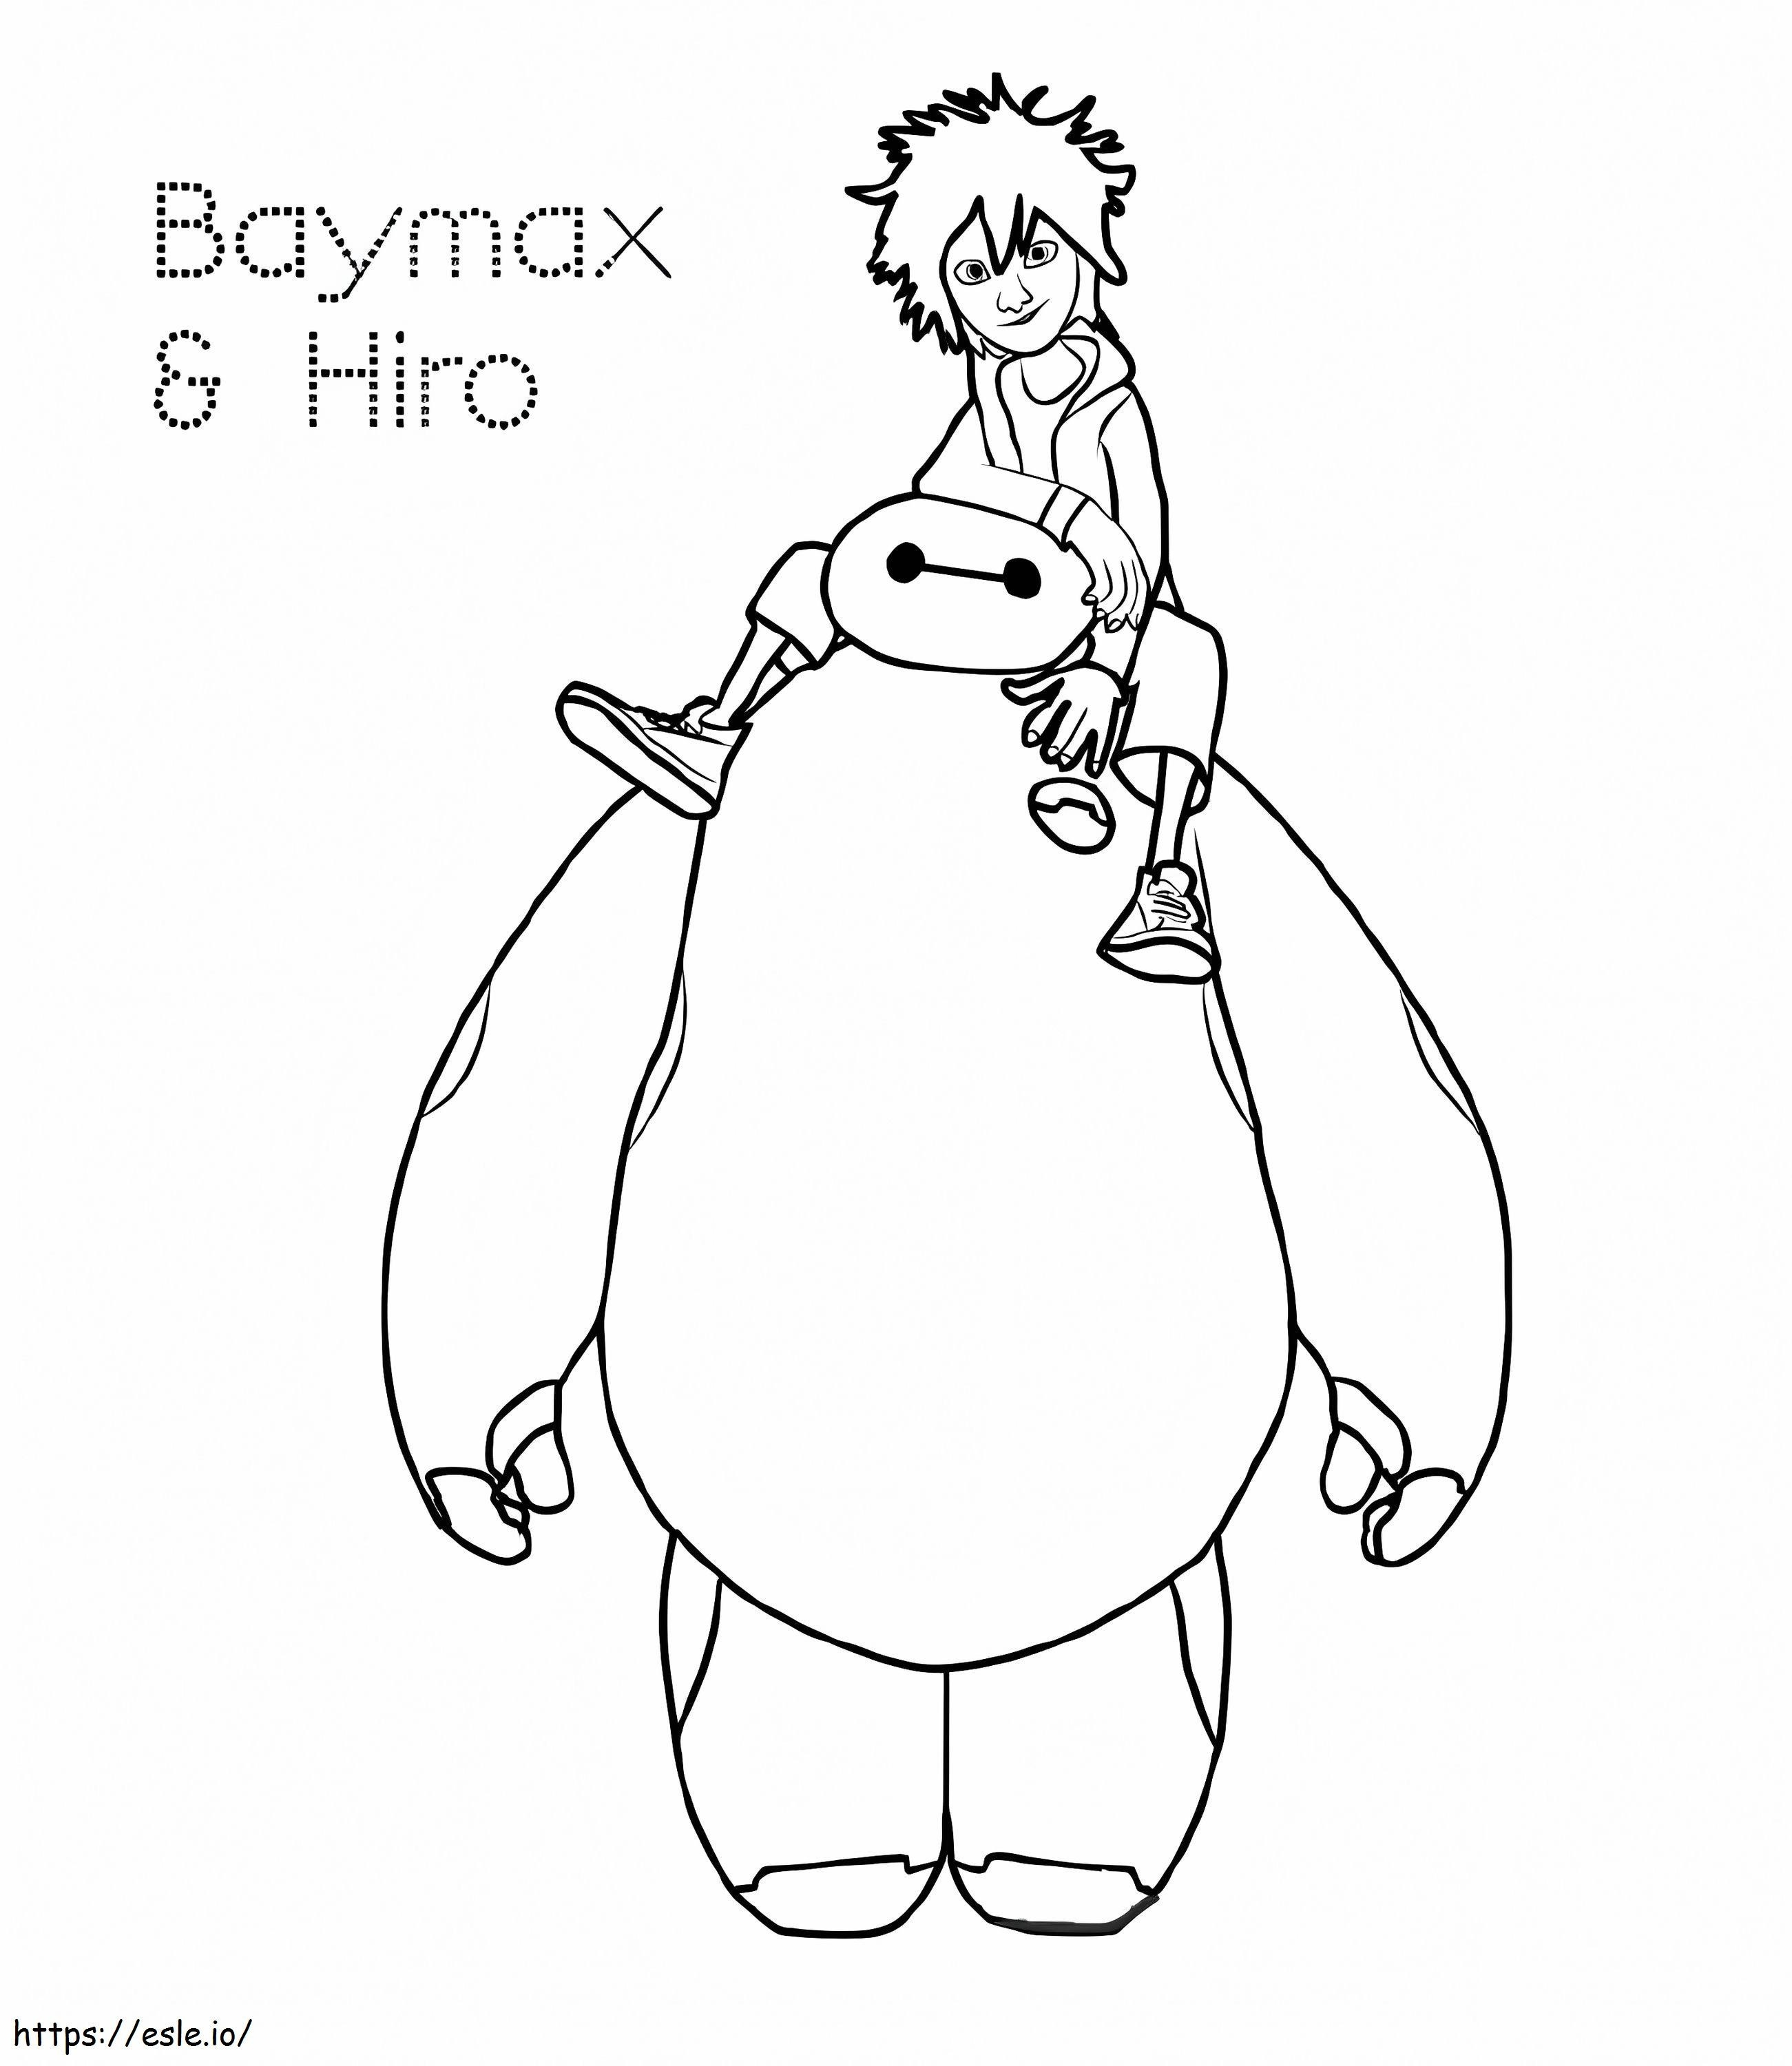 Hiro ve Baymax boyama